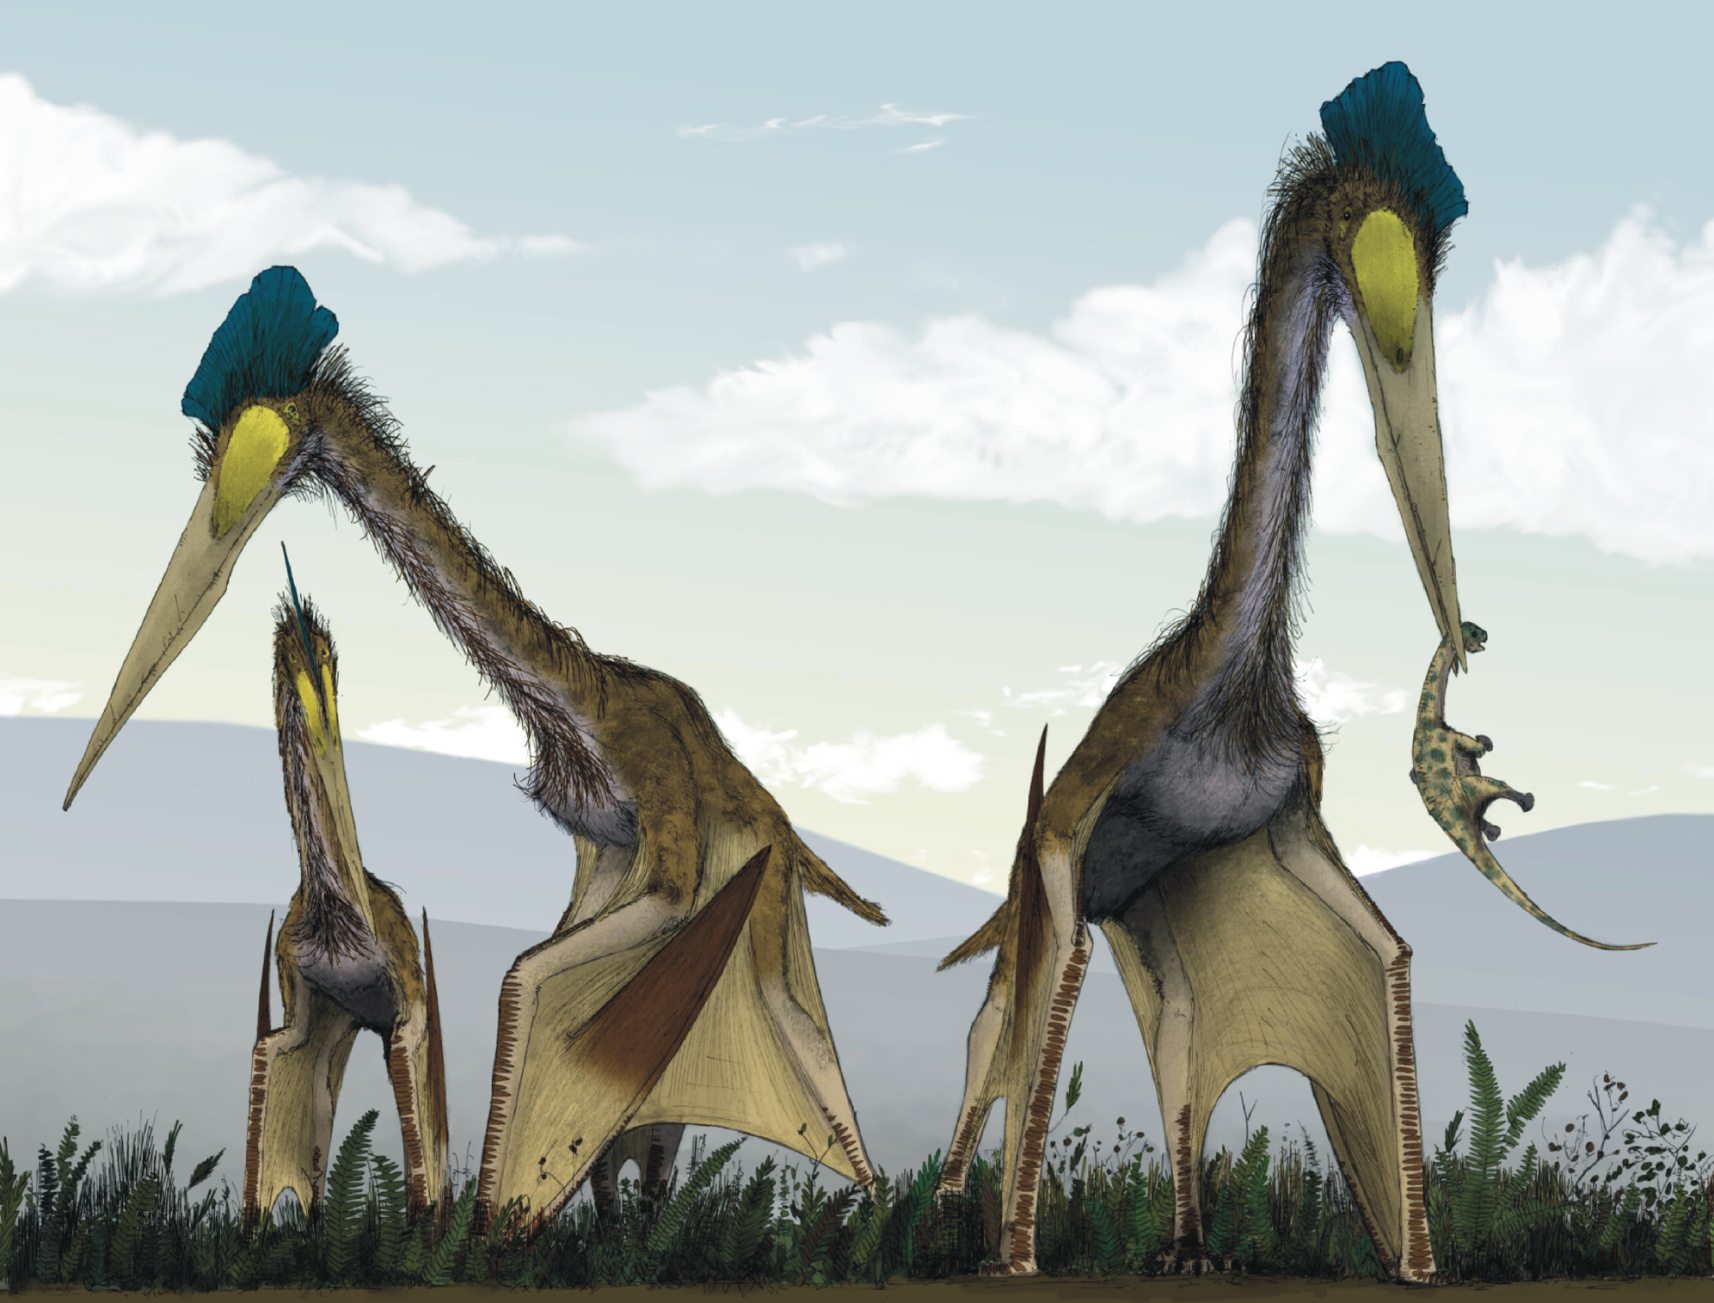 Dünya tarihinin en büyük uçan hayvanı olduğu düşünülen Quetzalcoatlus'un kanat açıklığı 35 feet idi. Maksimum menzili 80 ila 7 mil arasında olmak üzere 10 feet yükseklikte 15,000 ila 8,000 gün boyunca saatte 12,000 mil hızla uçabiliyordu.